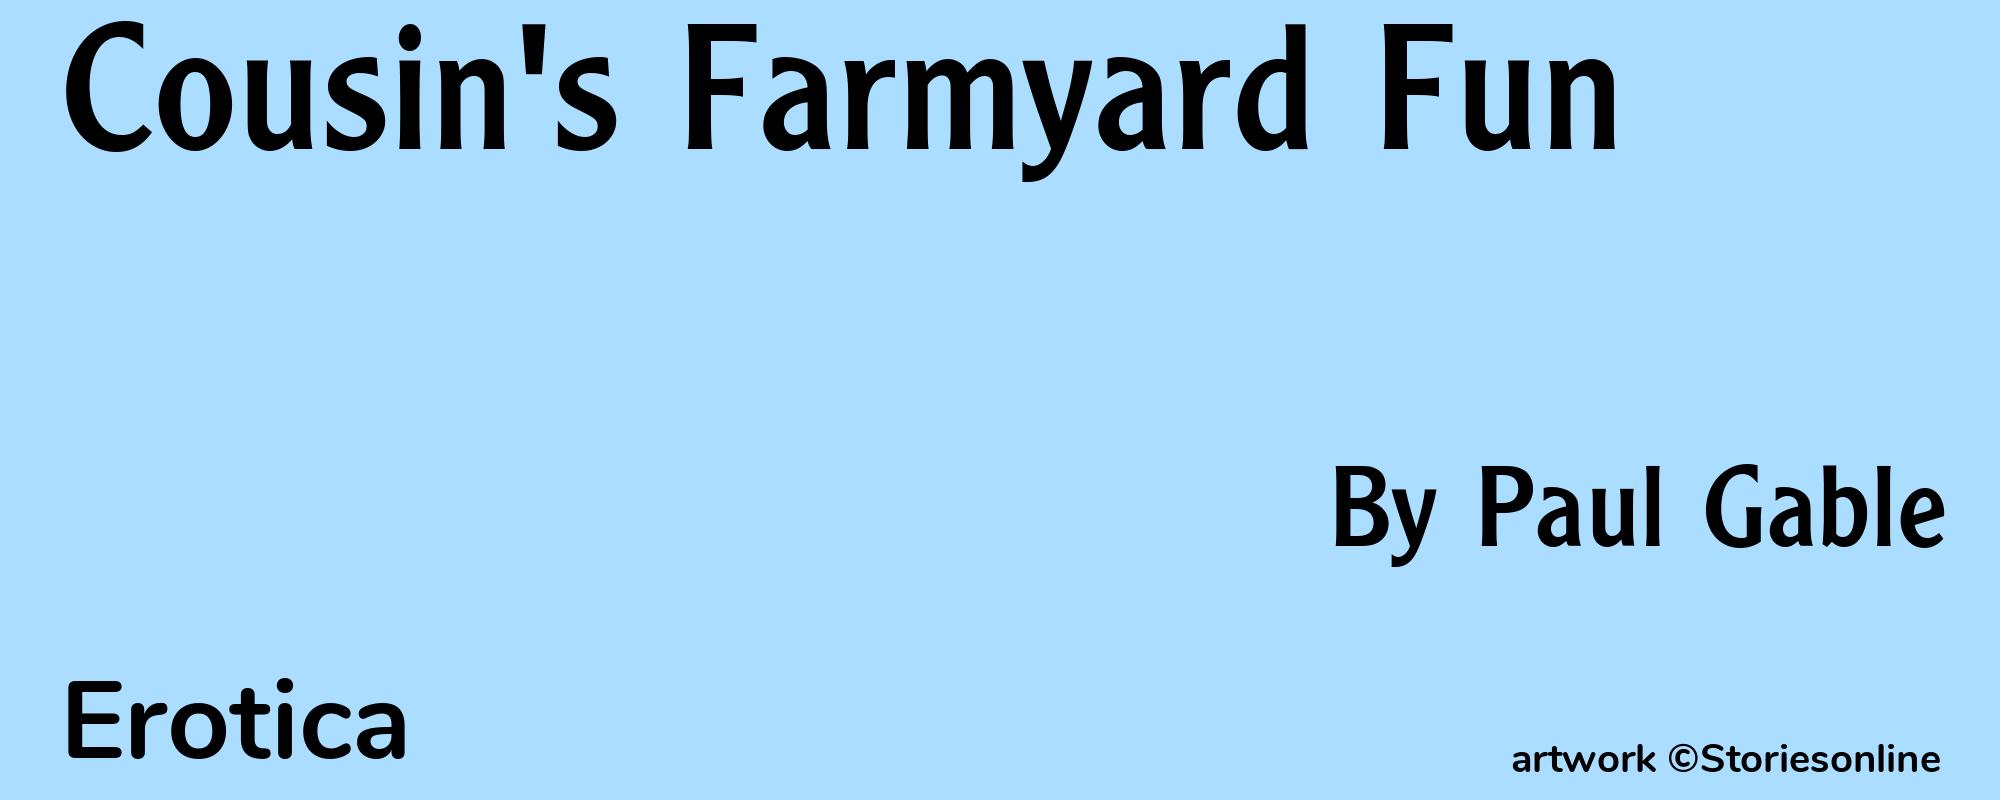 Cousin's Farmyard Fun - Cover